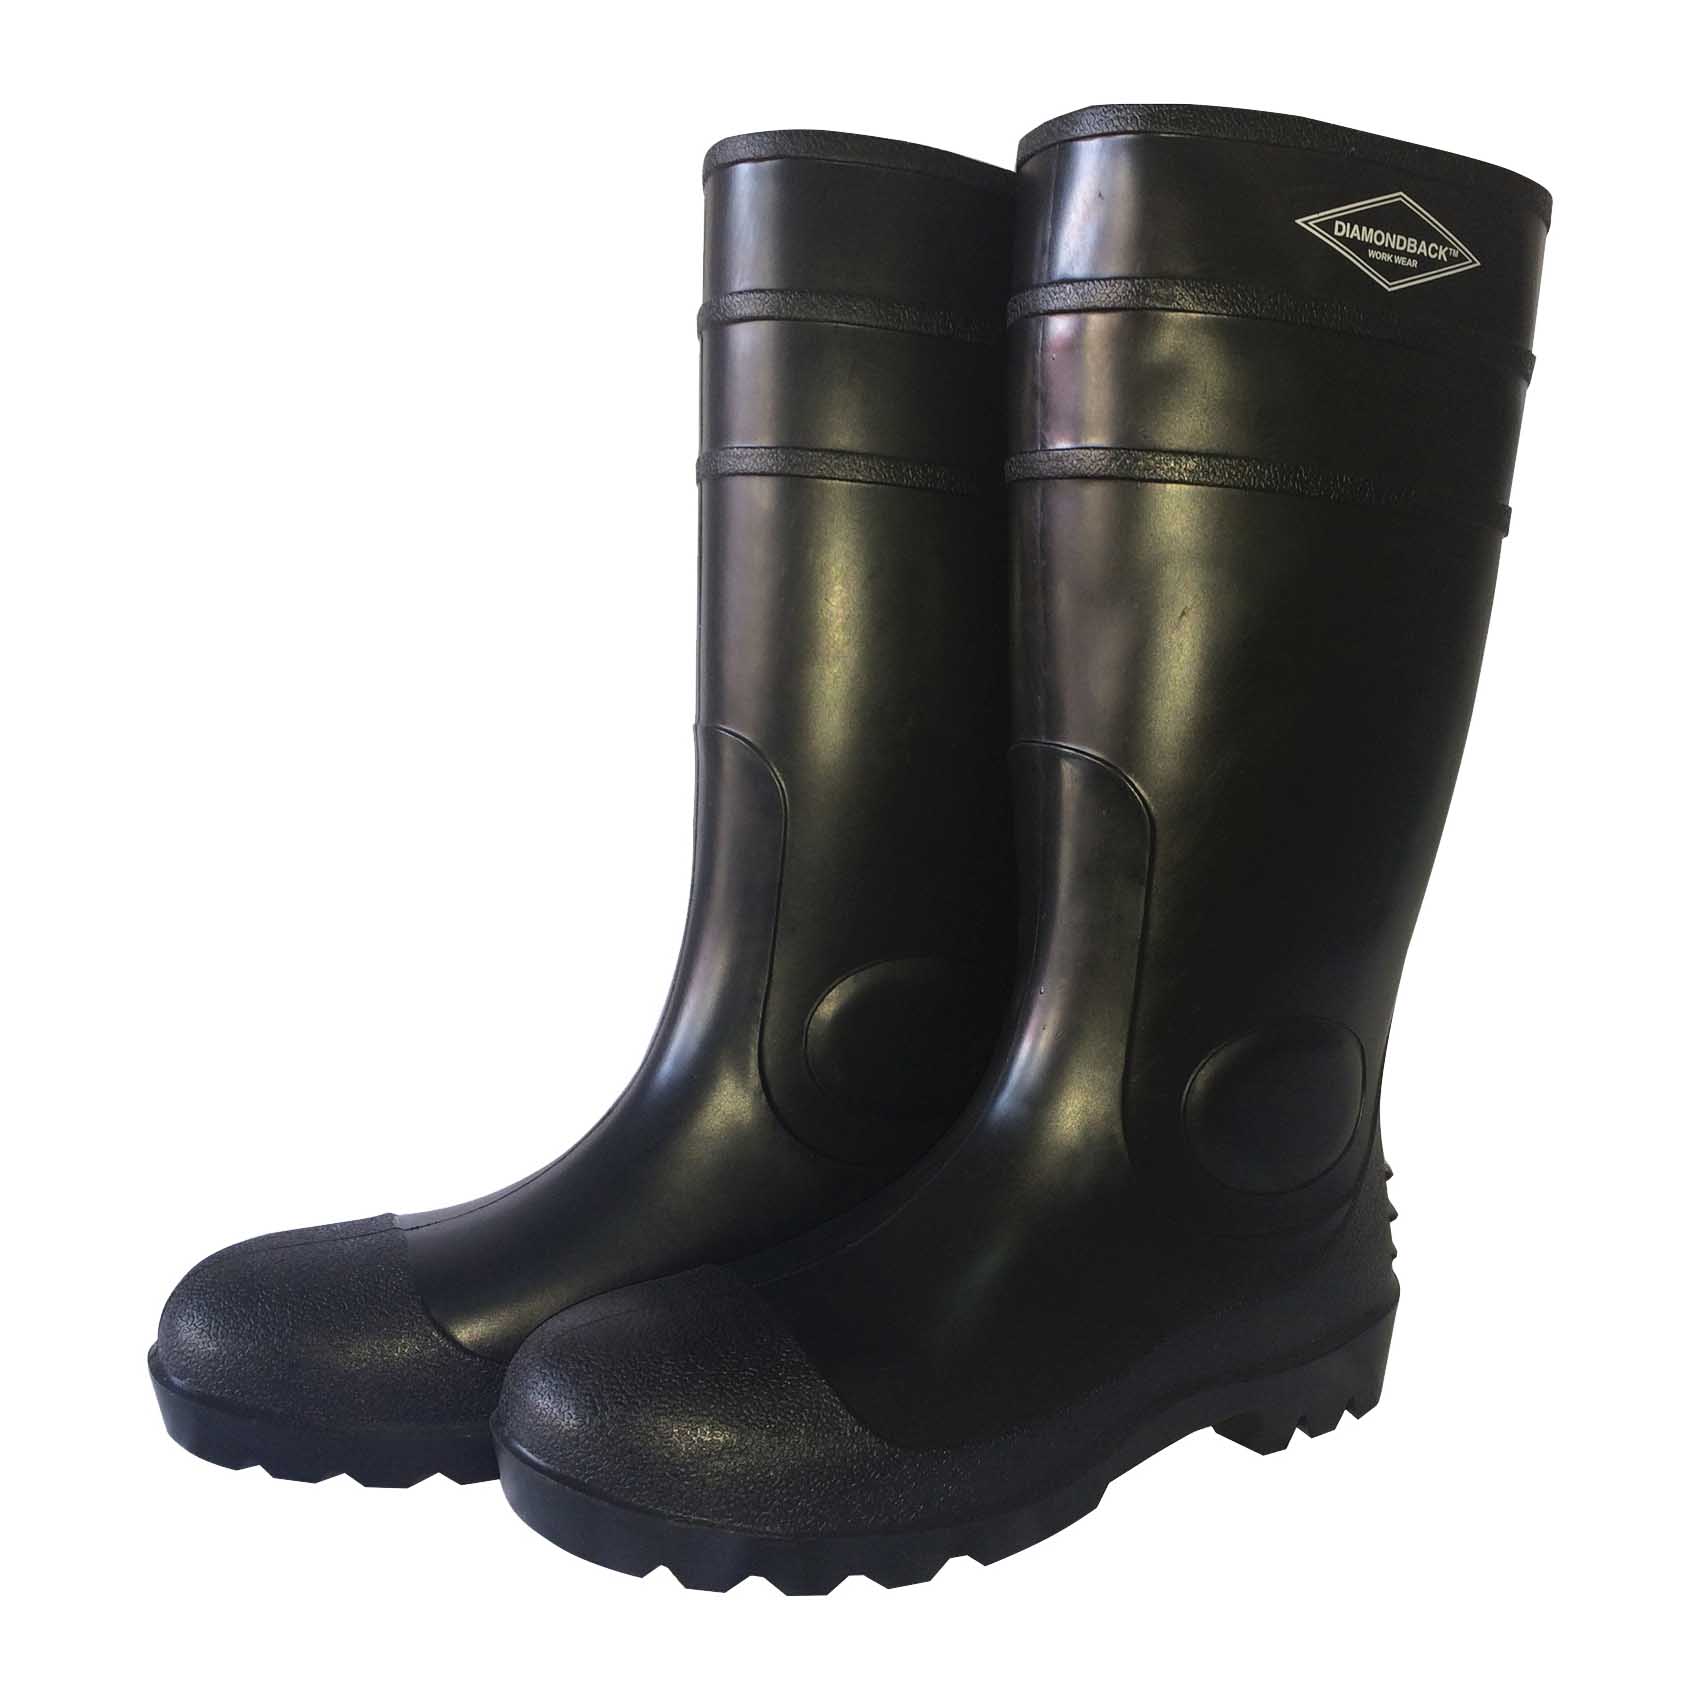 L-G06B15 Knee Boots, 15, Black, PVC Upper